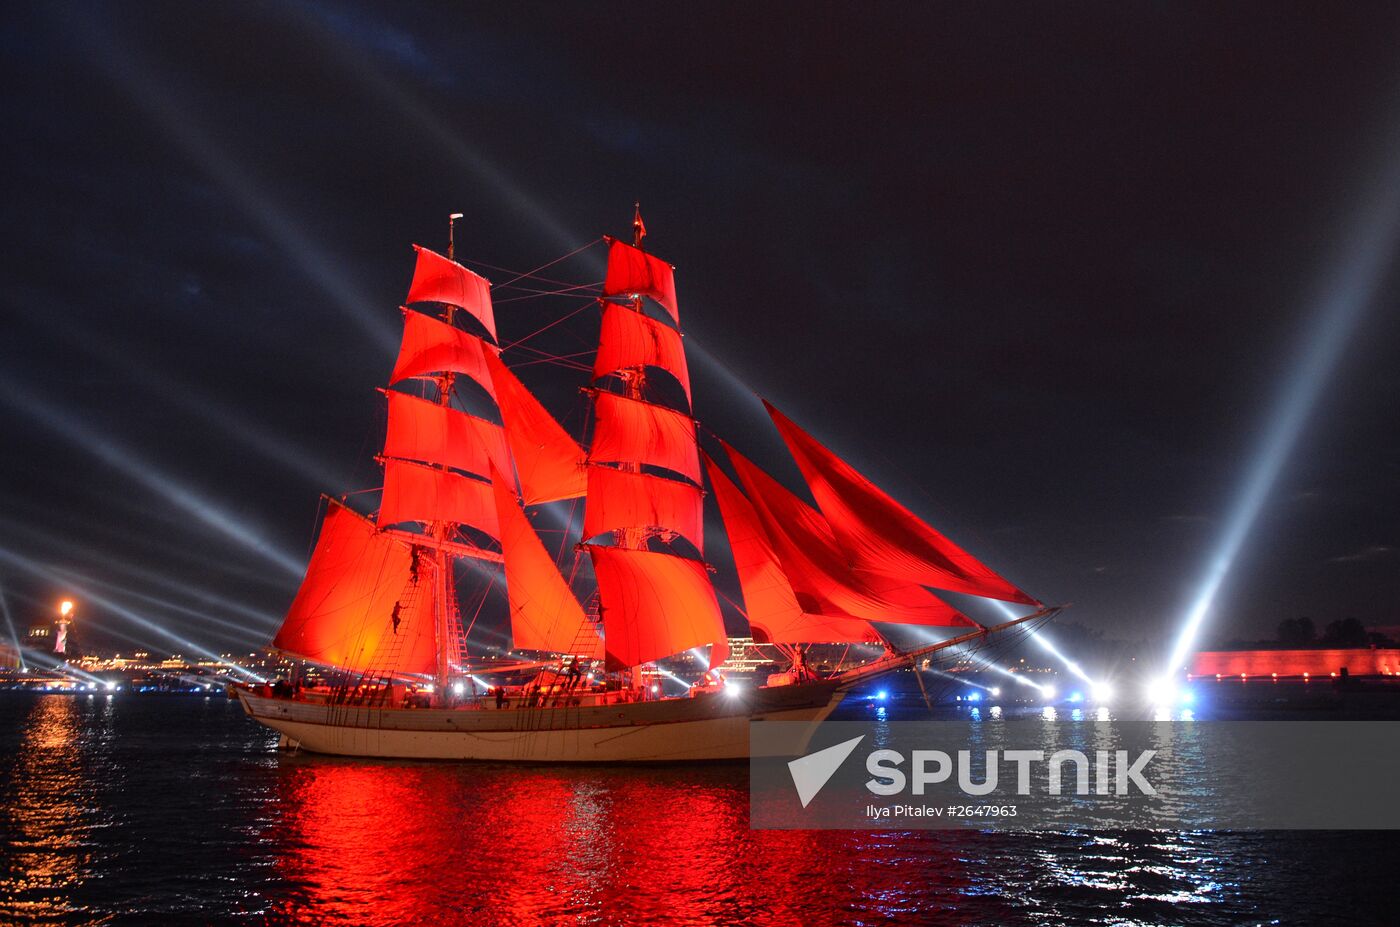 Scarlet Sails school-leavers' festival in St. Petersburg during SPEIF 2015